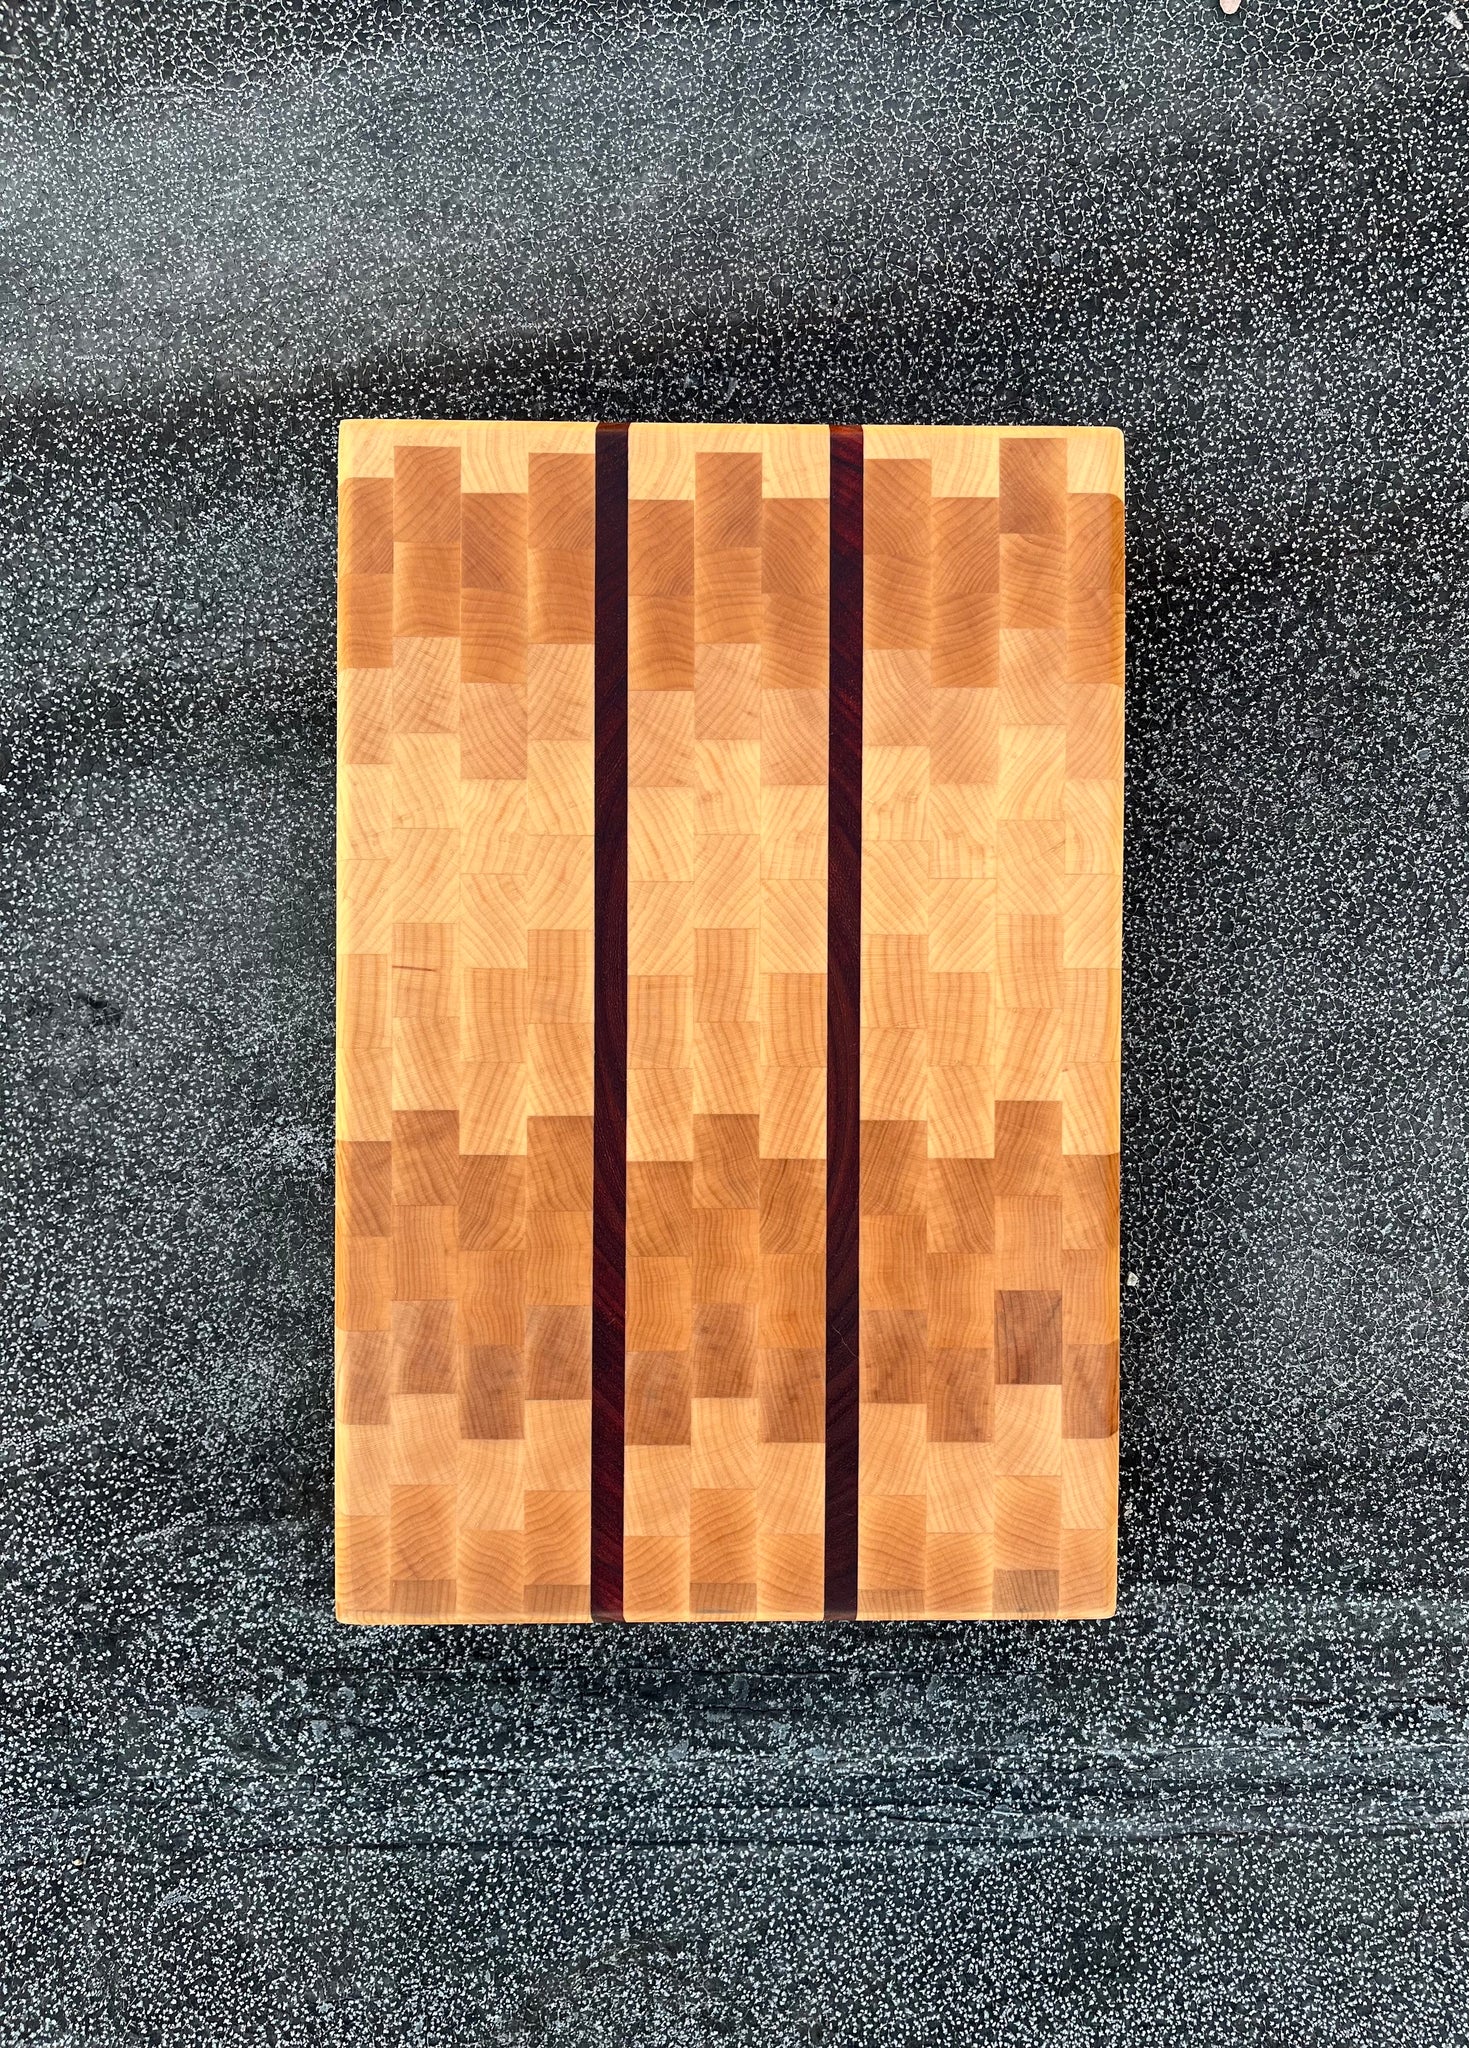 Rockler Hardwood Cutting Board Kit, 9-3/4''W x 16''L x 3/4'' Thick